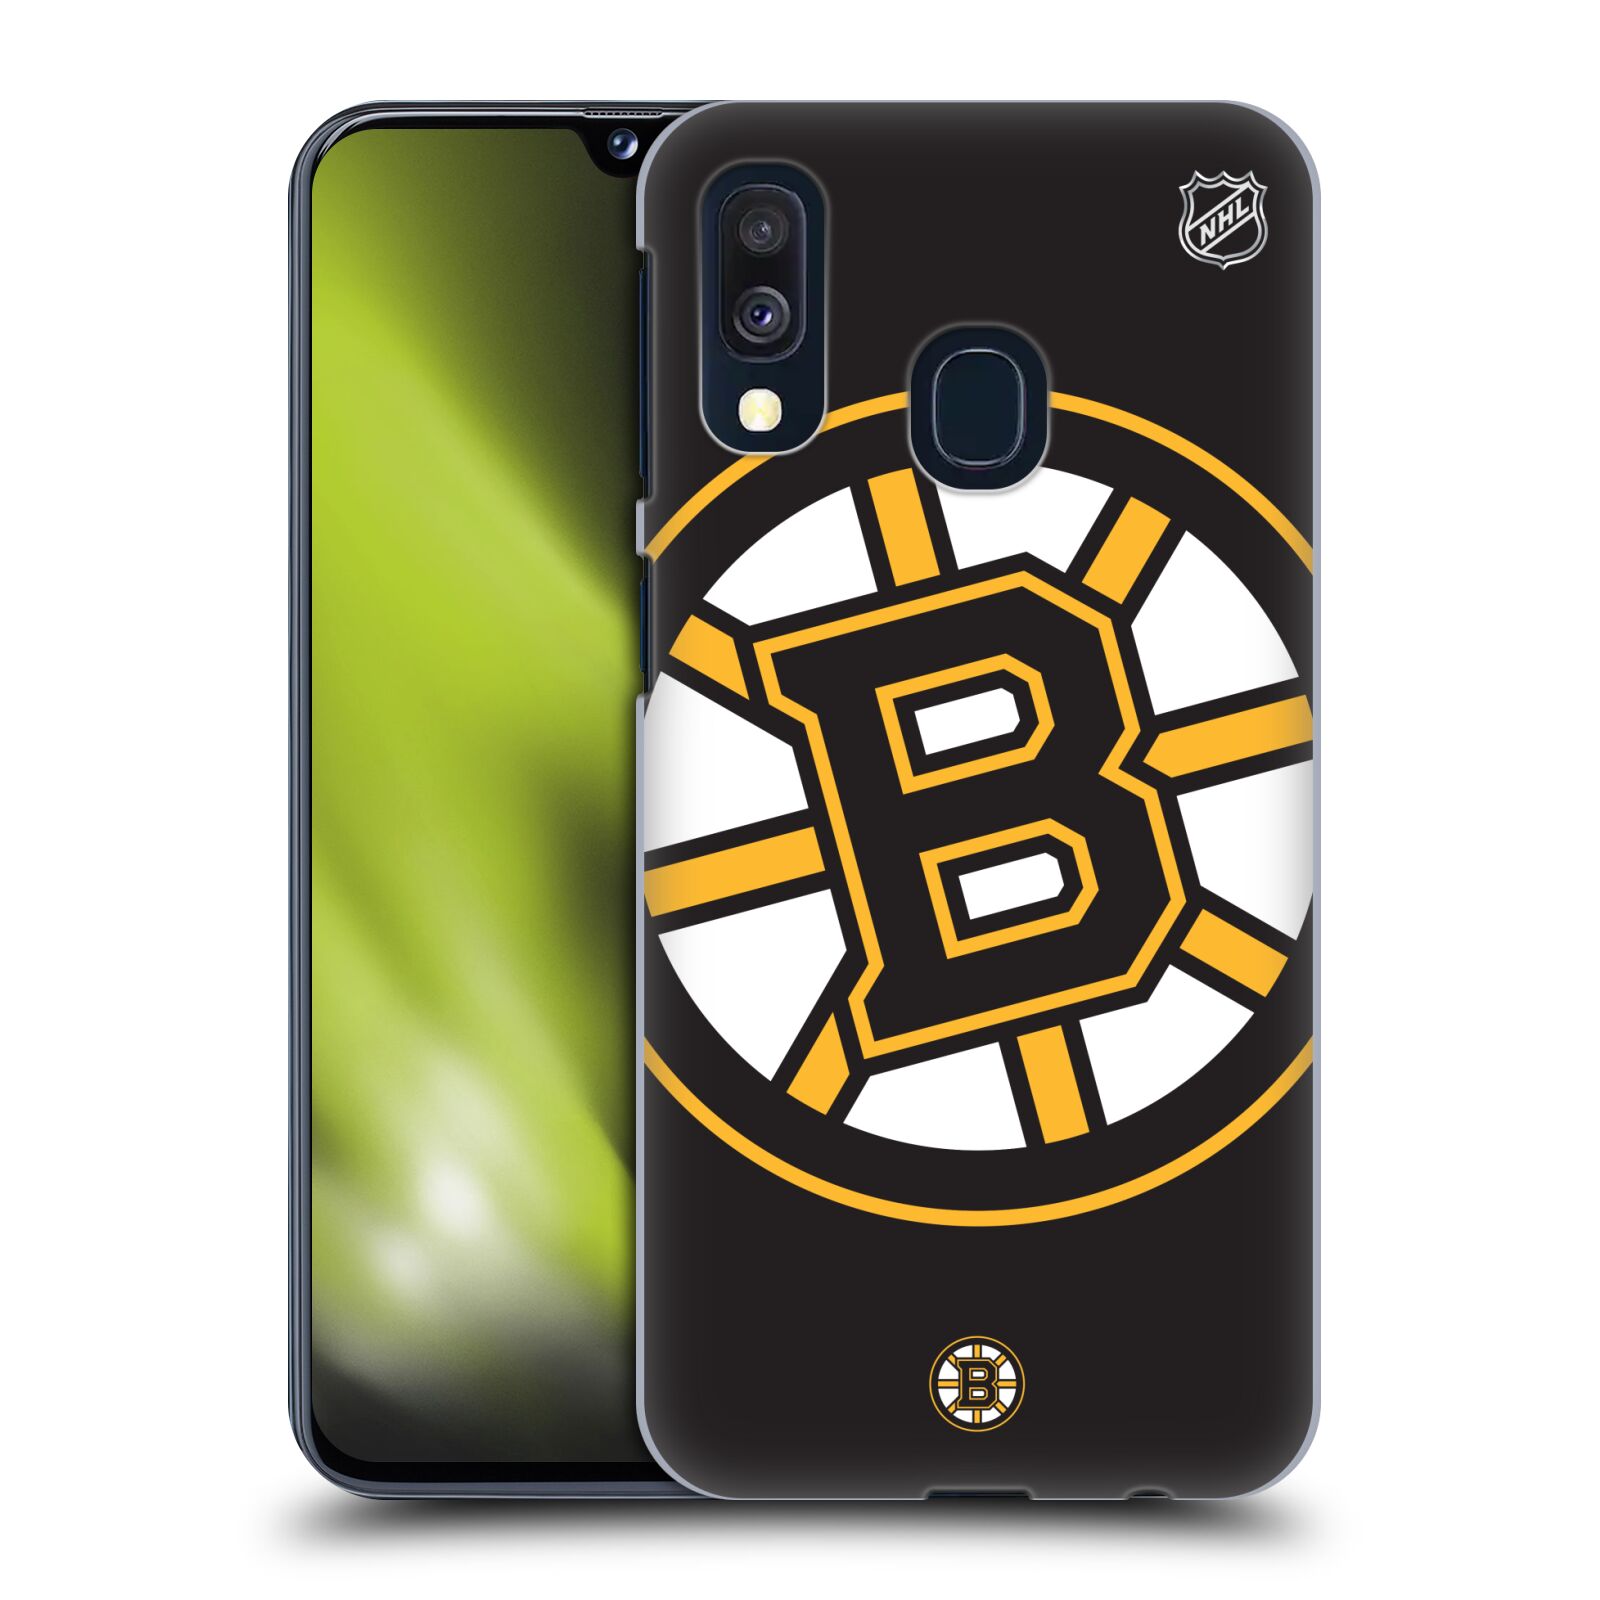 Pouzdro na mobil Samsung Galaxy A40 - HEAD CASE - Hokej NHL - Boston Bruins - velký znak